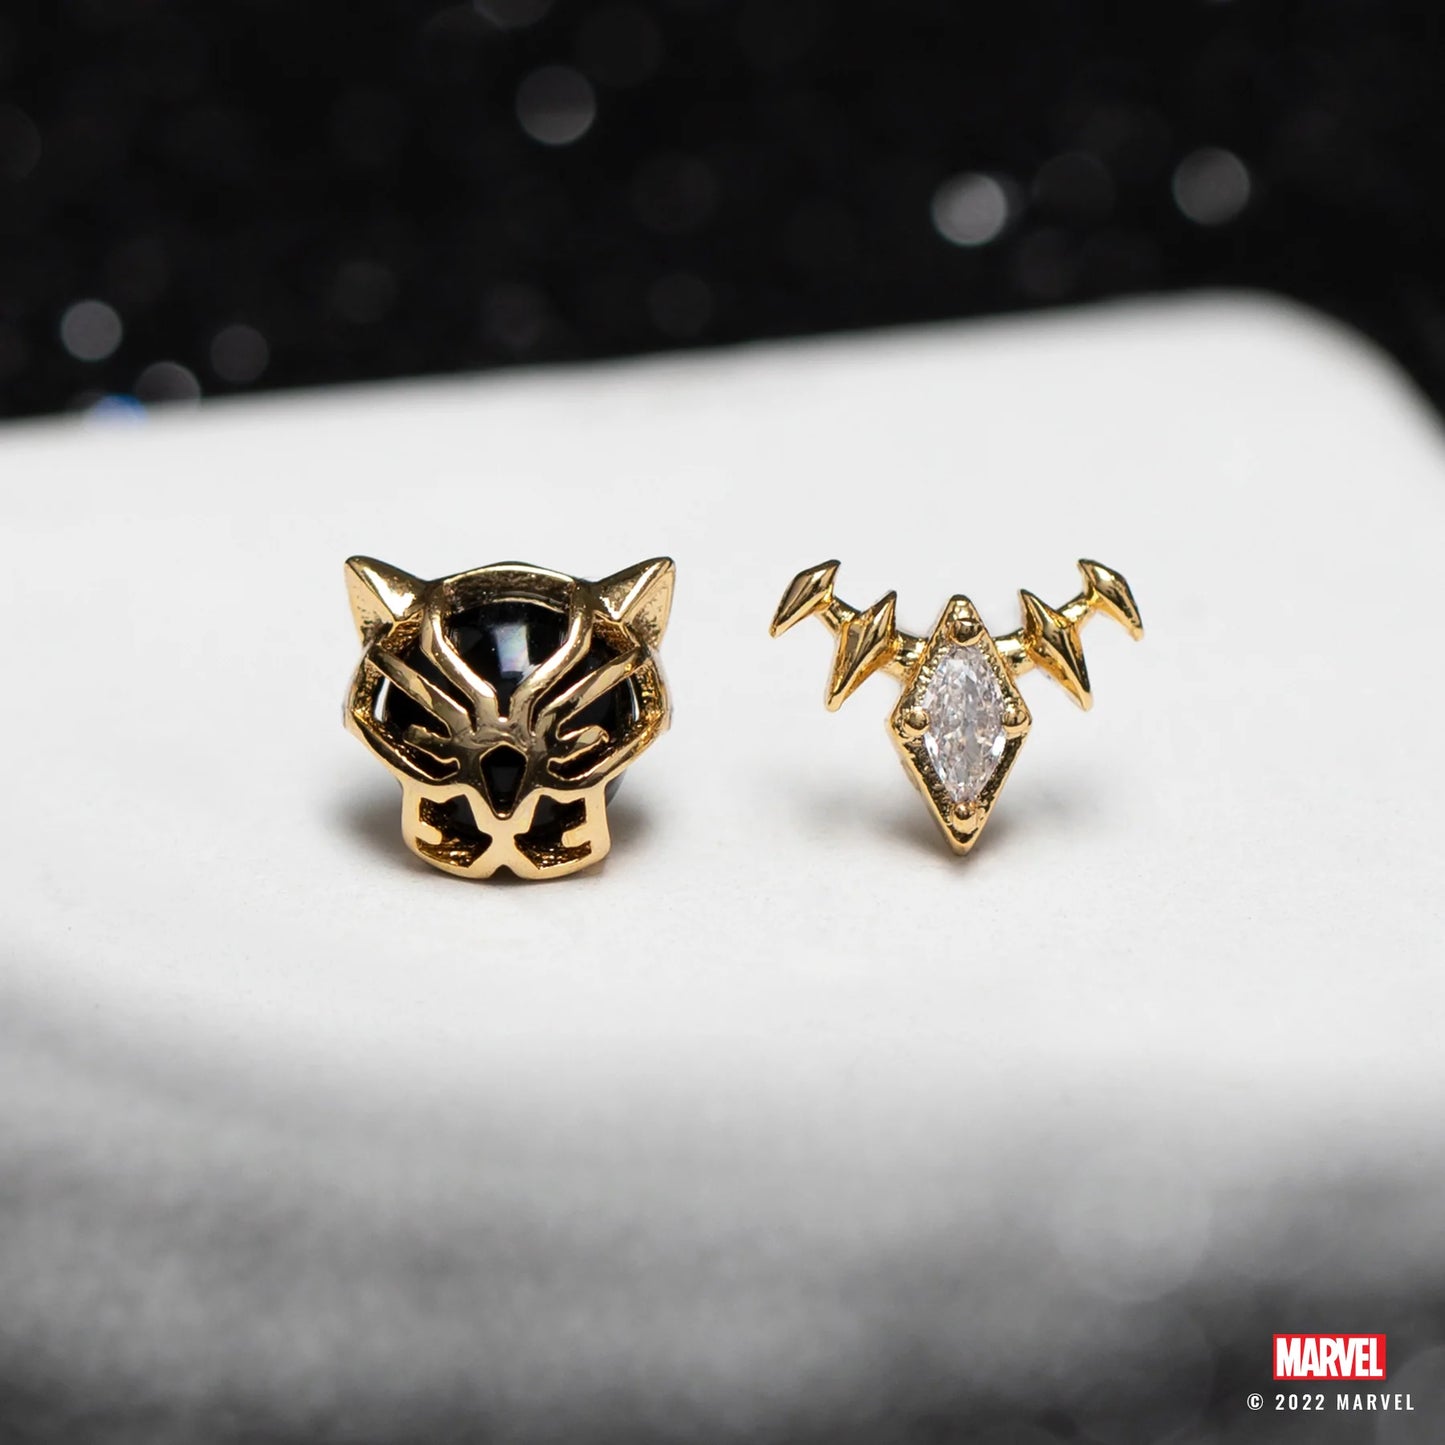 Black Panther (Marvel) Stud Earrings